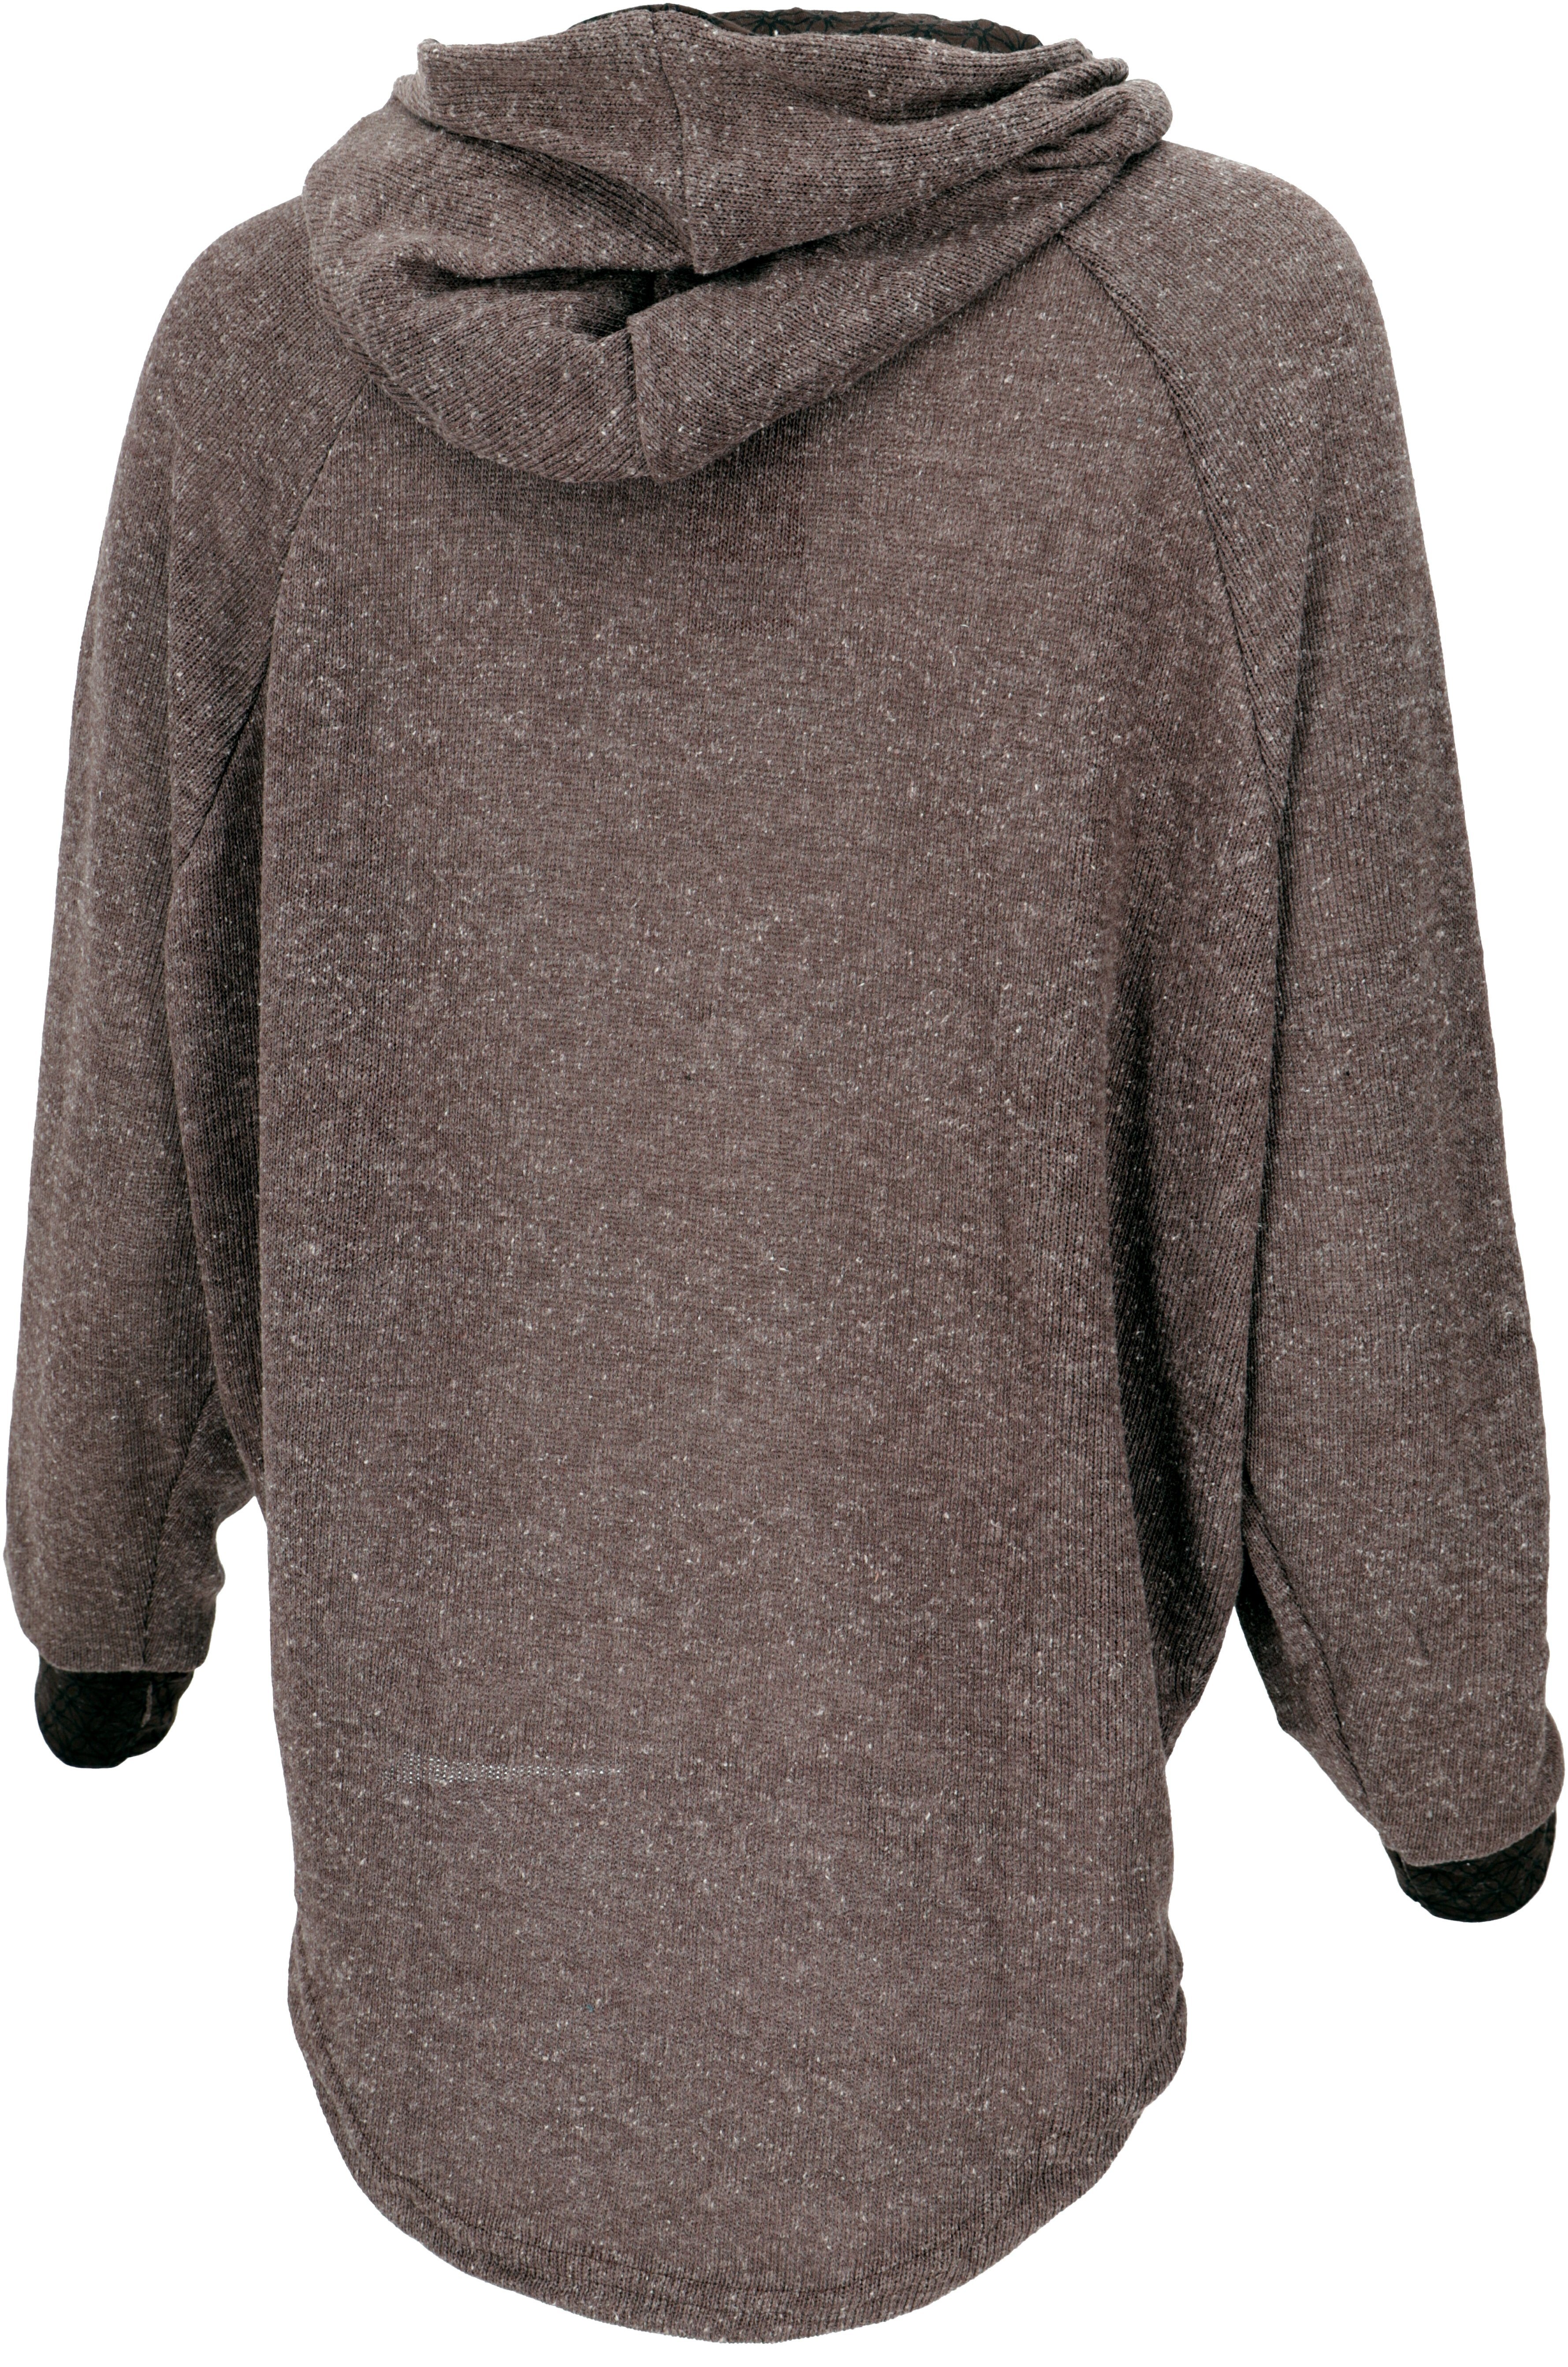 Guru-Shop Longsleeve Hoody, Sweatshirt, Pullover, Kapuzenpullover braun alternative Bekleidung 